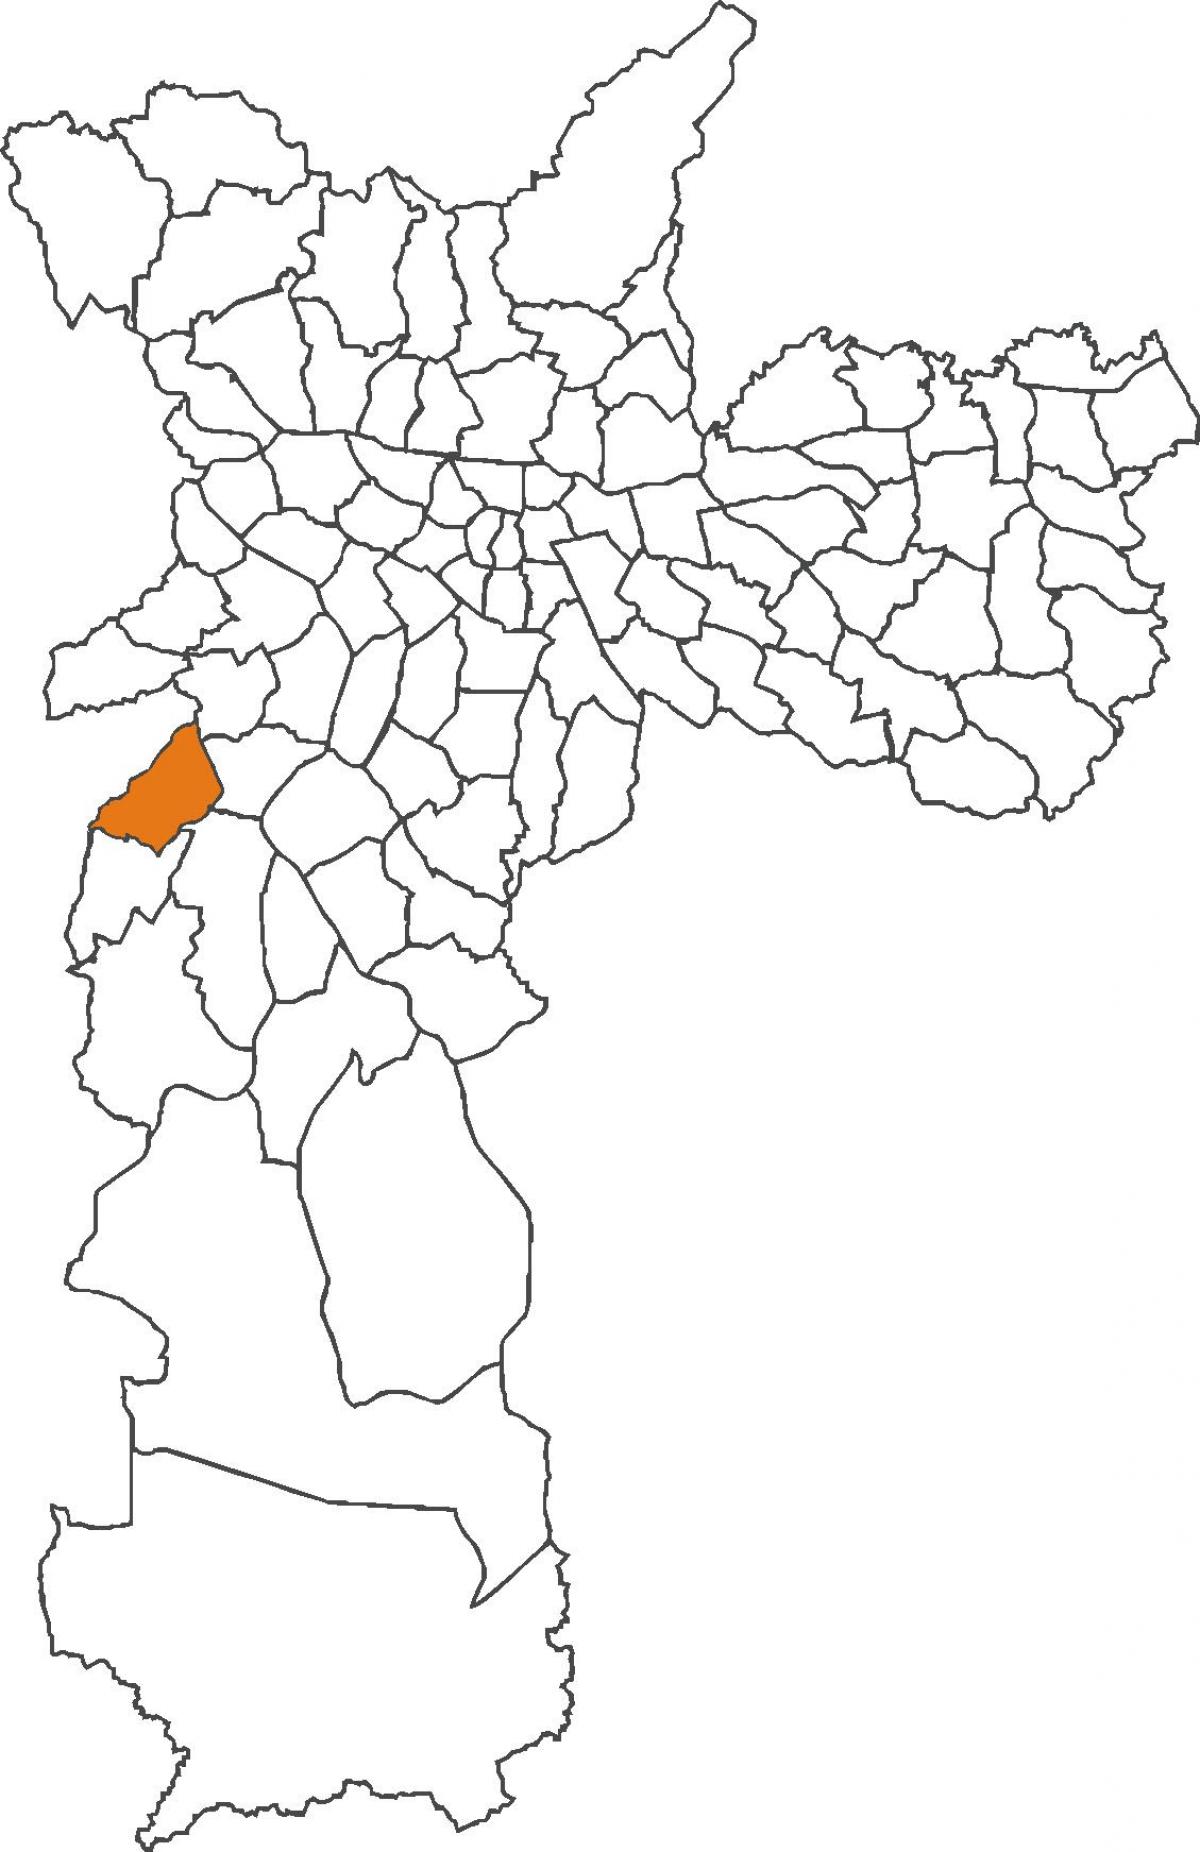 মানচিত্র এর ক্যাম্পো Limpo জেলা